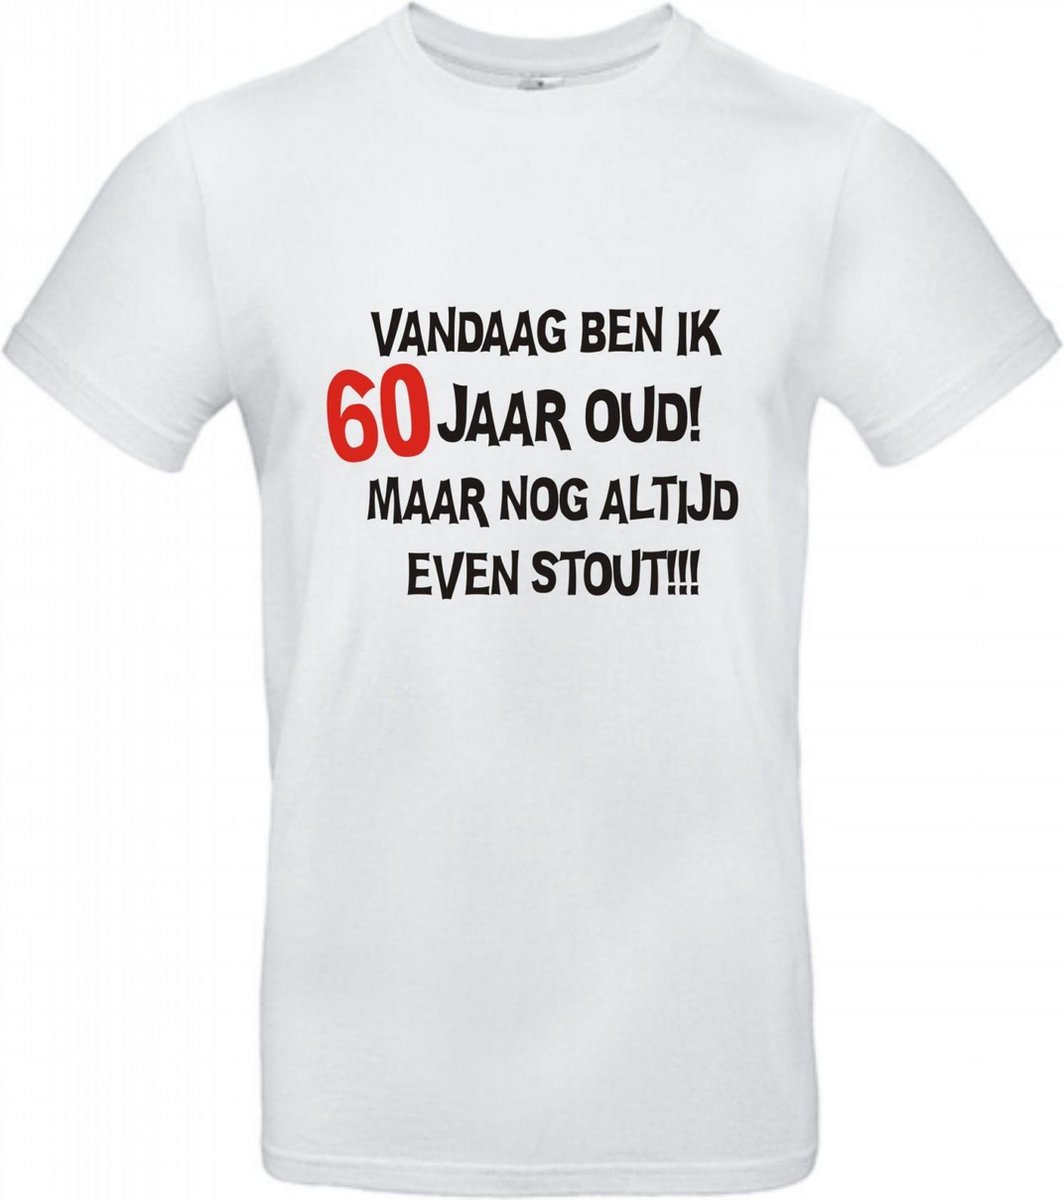 Afbeelding van product Go Mama  60 jaar verjaardag - T-shirt Vandaag ben ik 60 jaar oud maar nog altijd even stout! - Maat XXL - Wit - 60 jaar verjaardag - verjaardag shirt T-shirt korte mouw